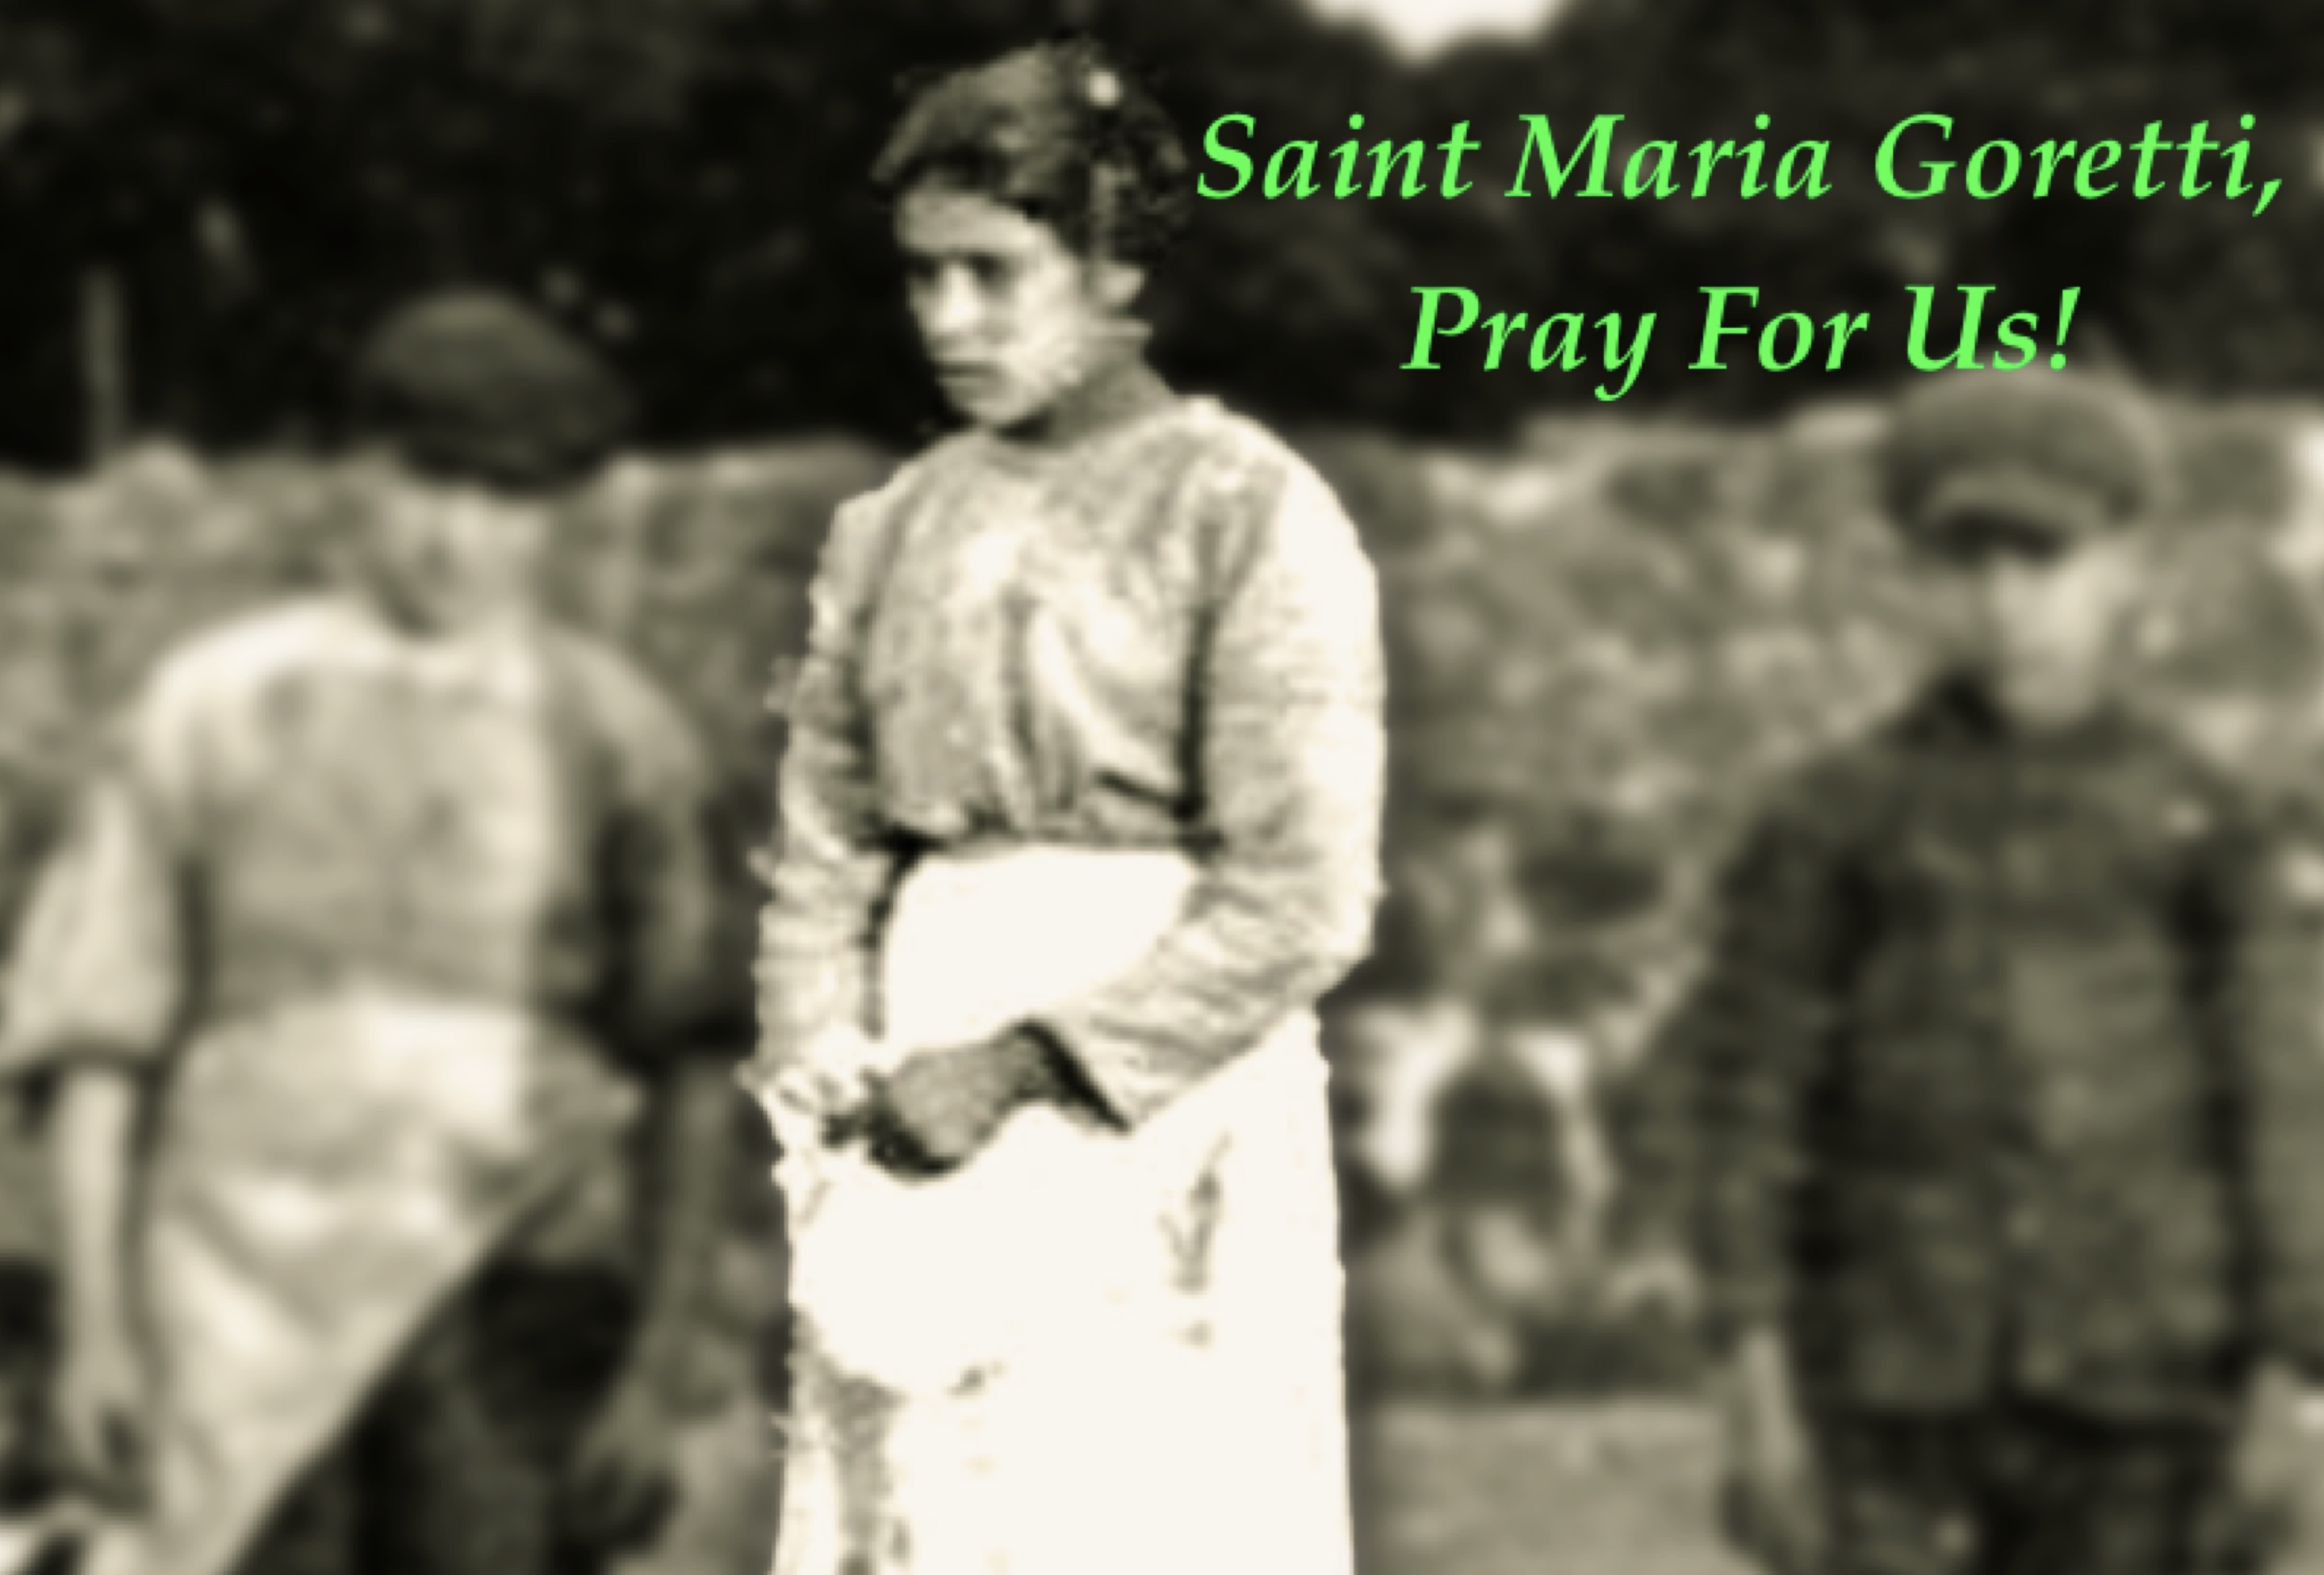 6th July - Saint Maria Goretti